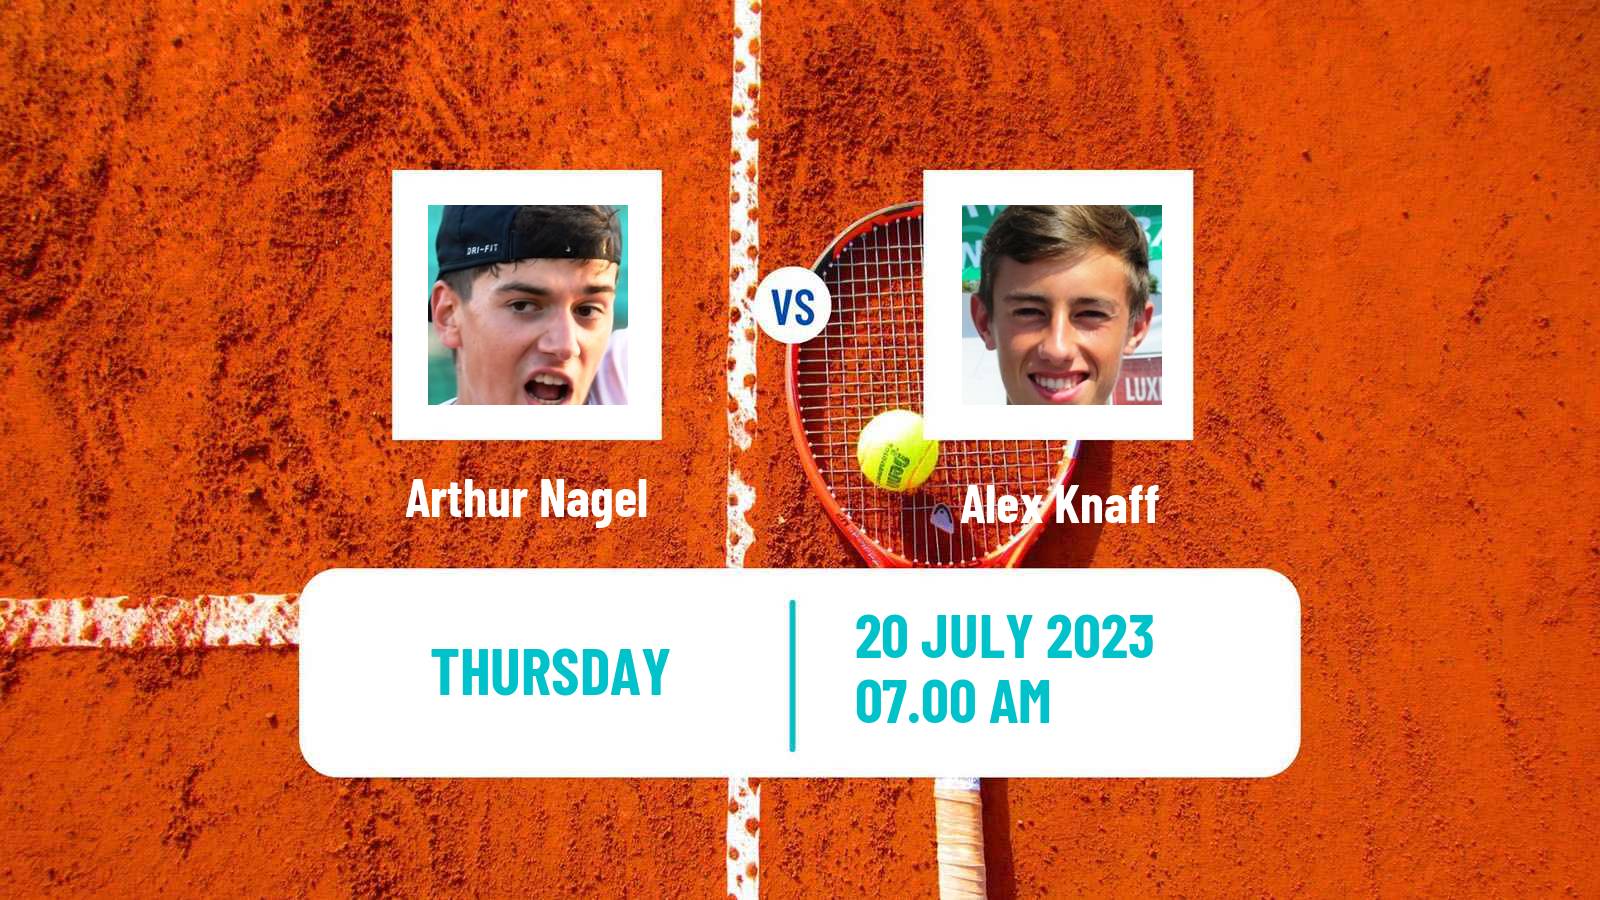 Tennis ITF M25 Esch Alzette 2 Men Arthur Nagel - Alex Knaff